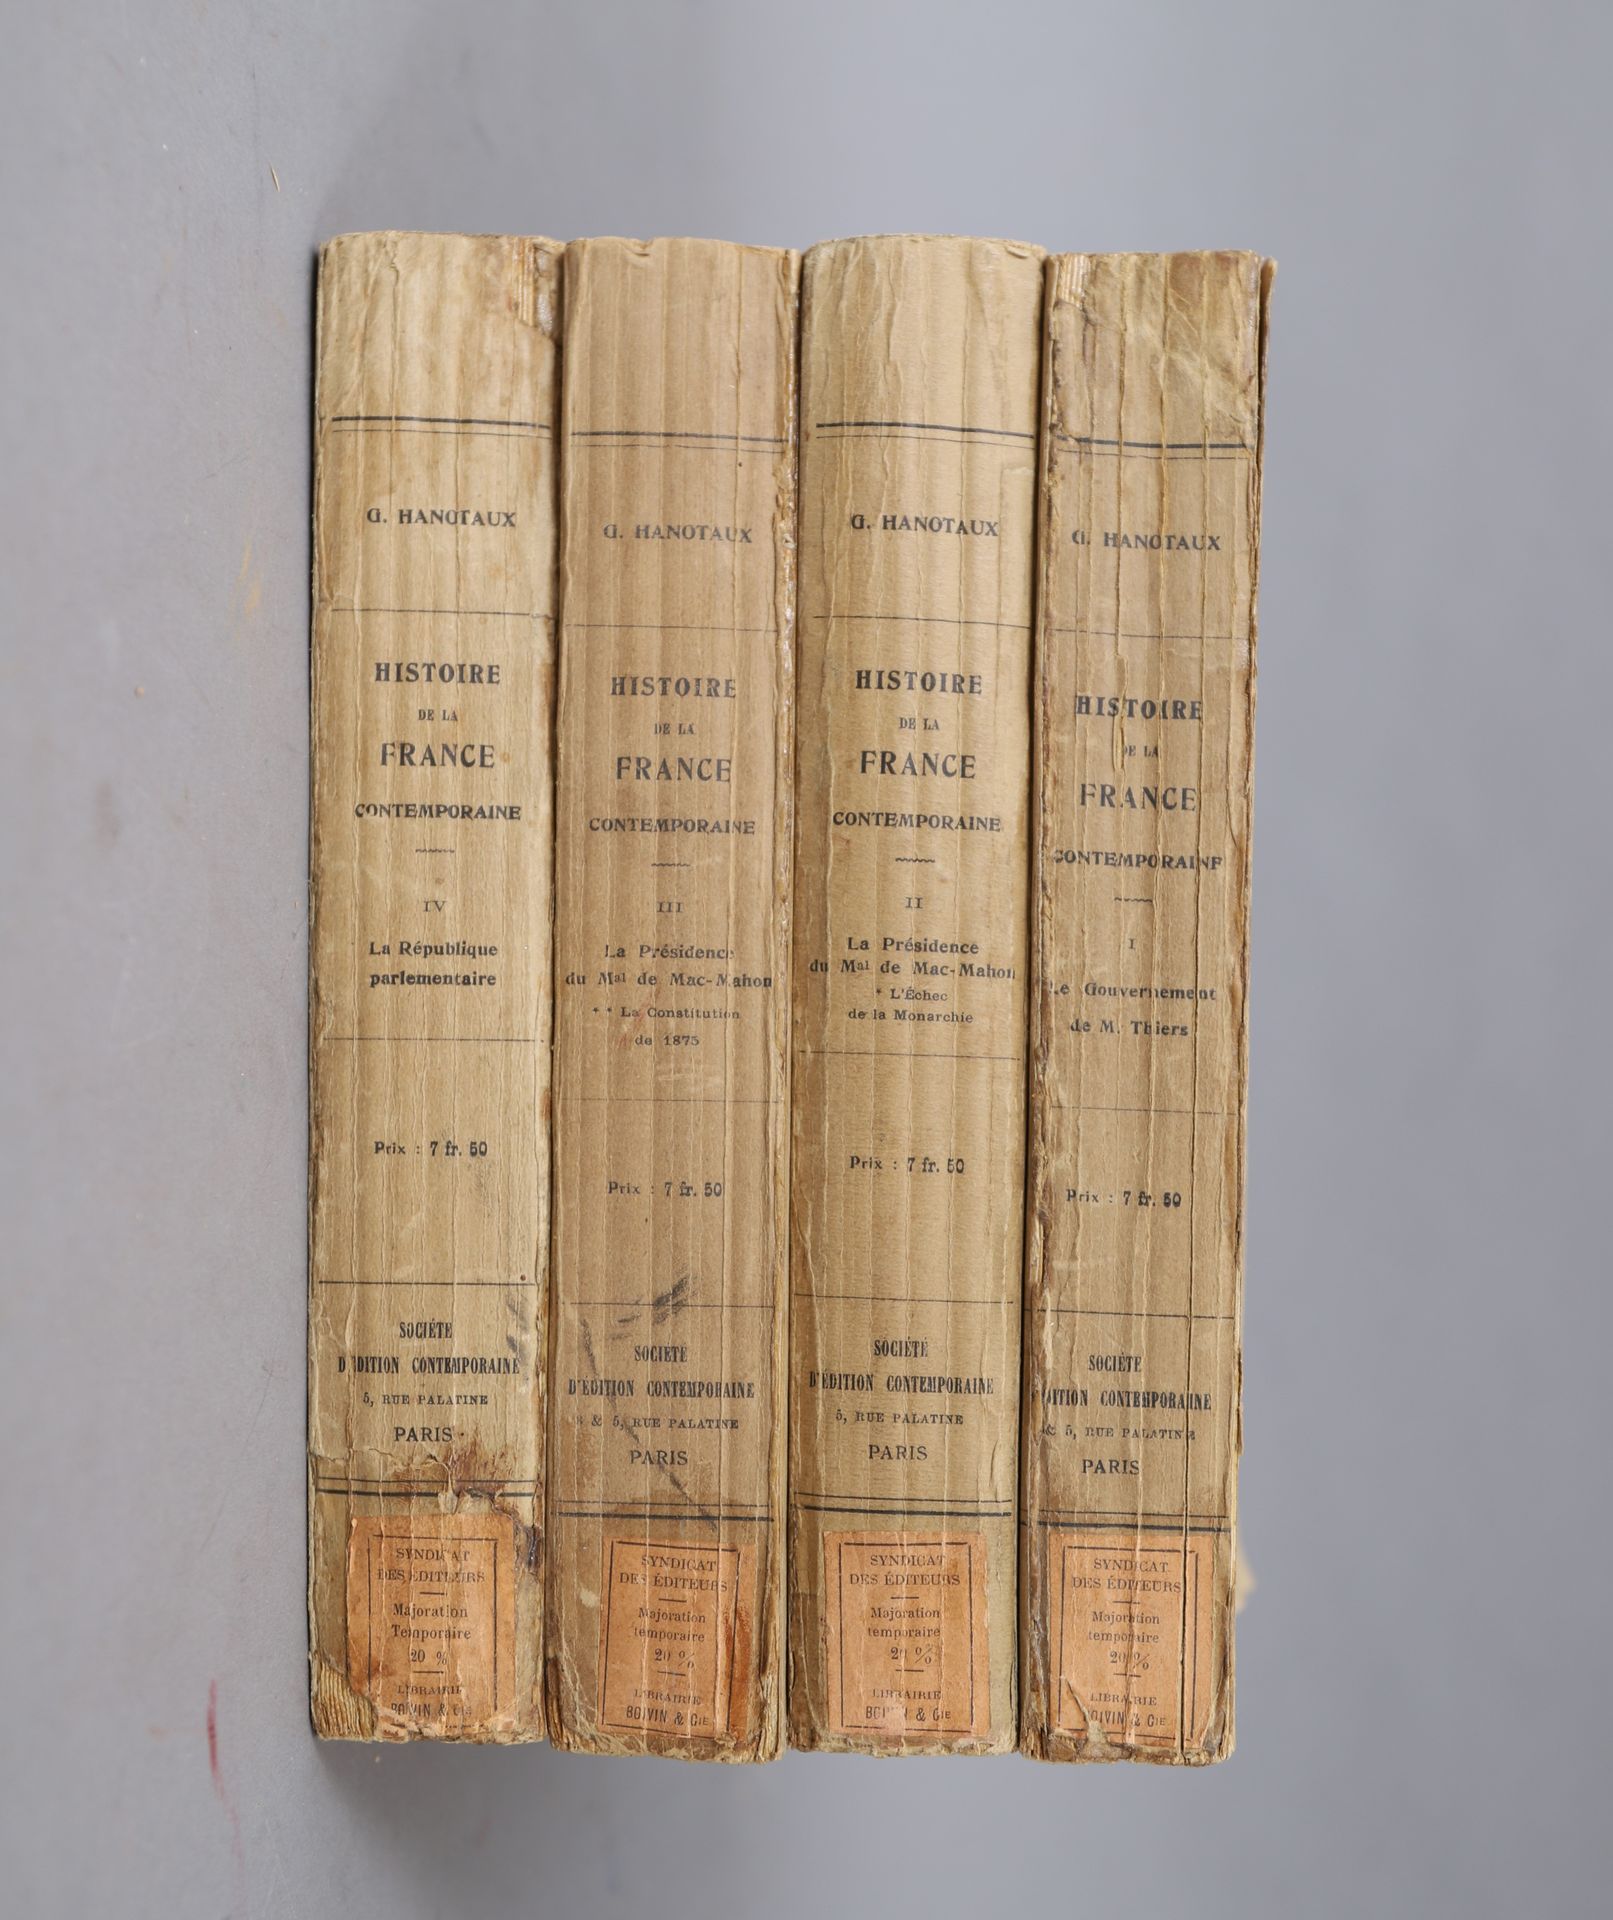 Null HISTORIA de la Francia contemporánea. HANOTAUX.

4 volúmenes en rústica.